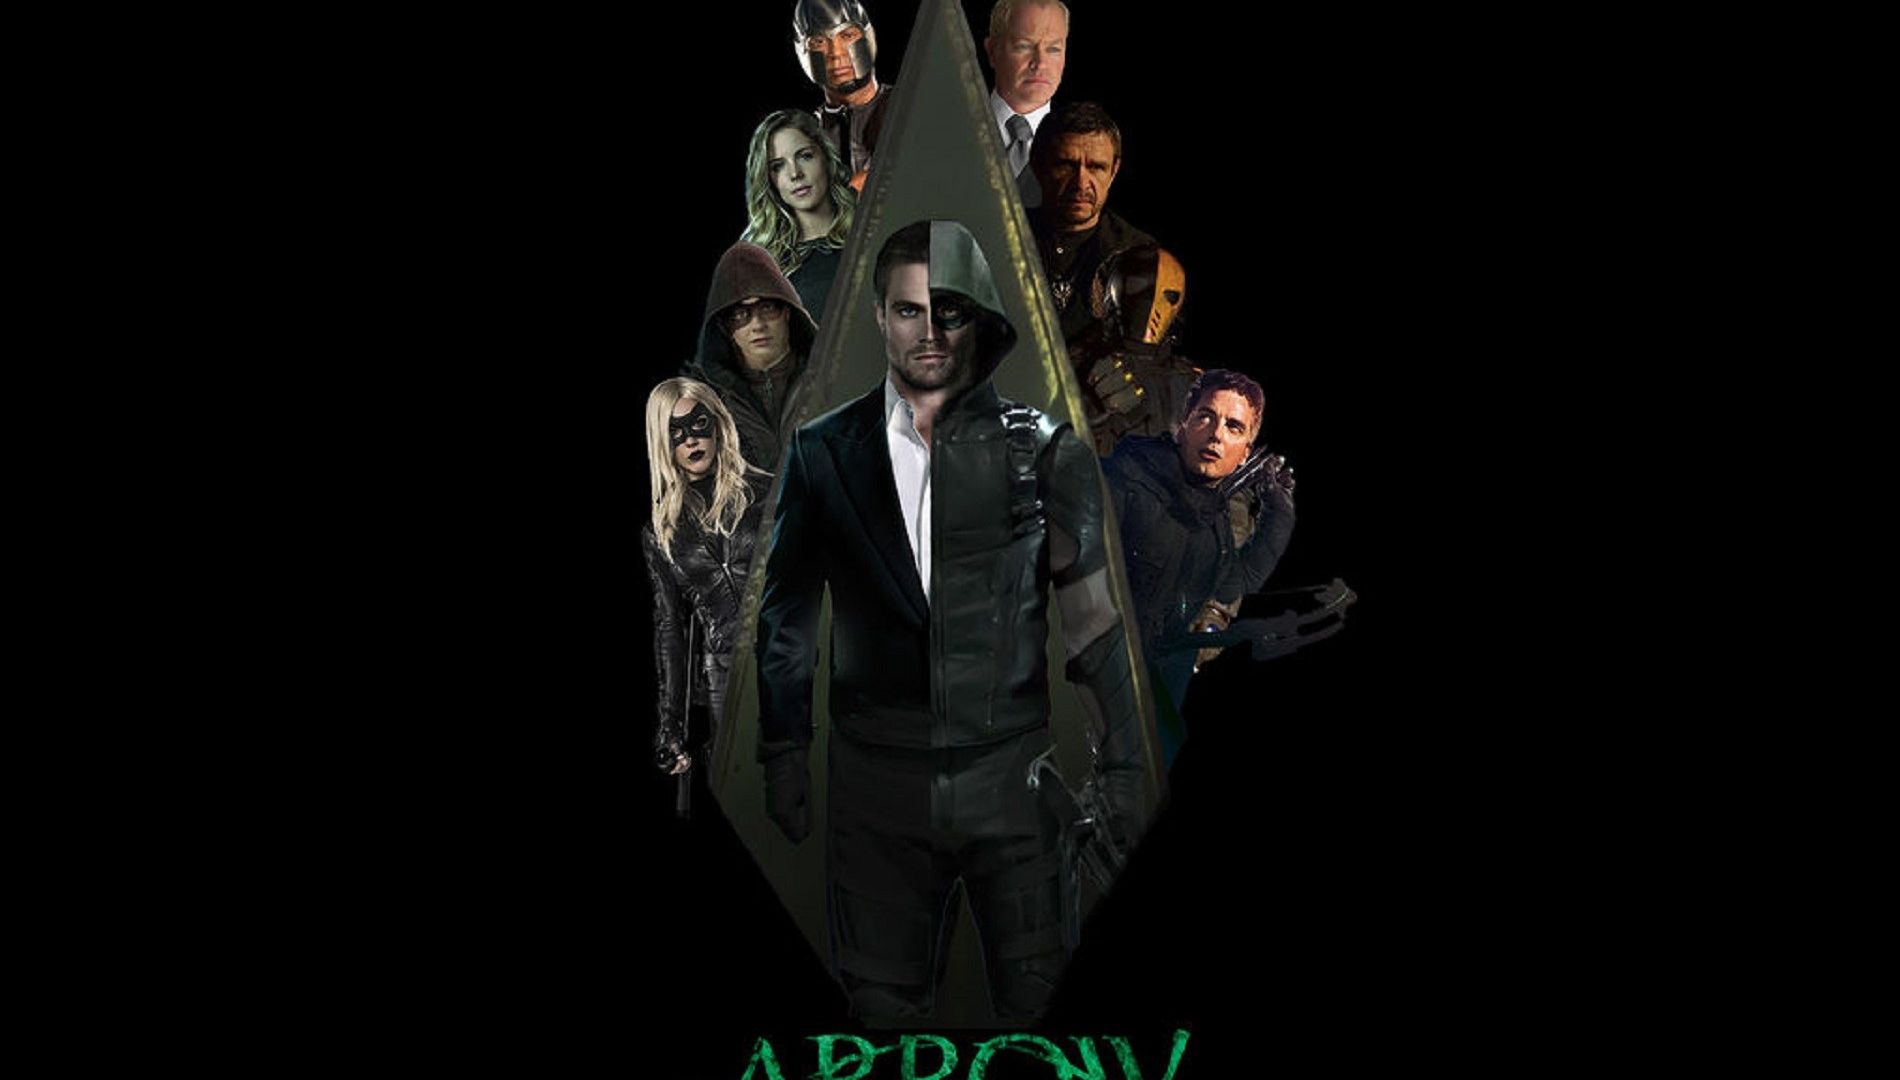 Wallpaper Arrow tv series season 4